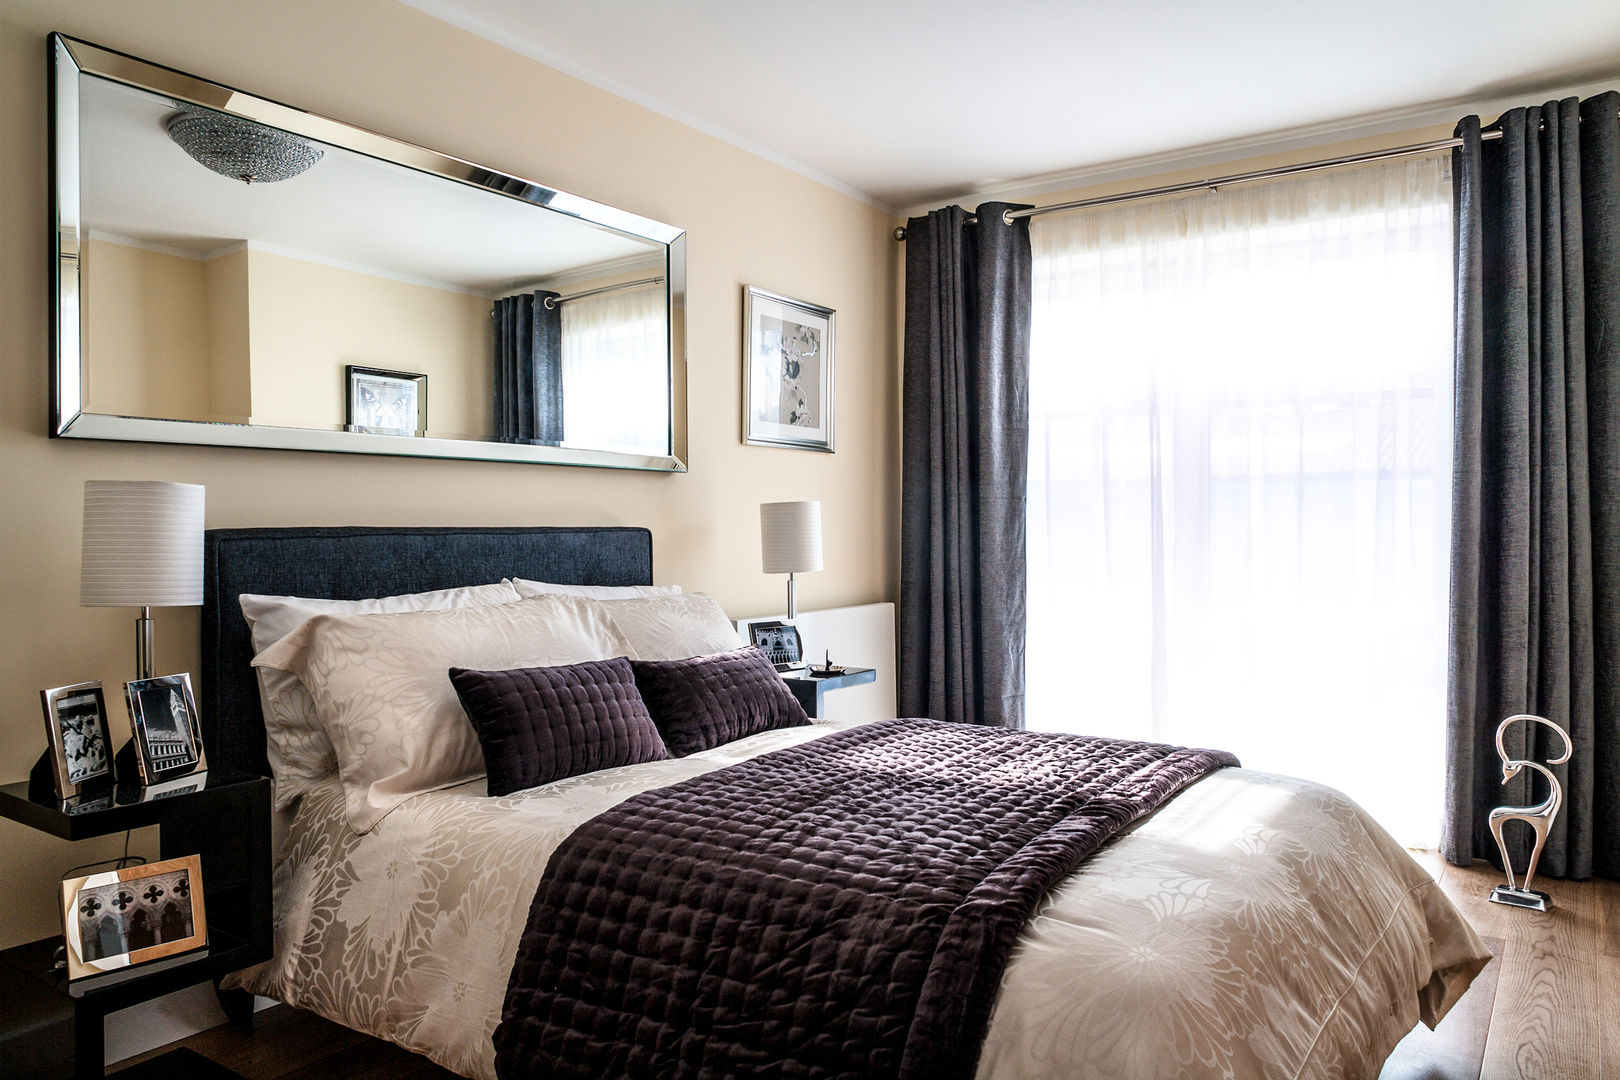 Bedroom Lujansphotography Dormitorios modernos: Ideas, imágenes y decoración